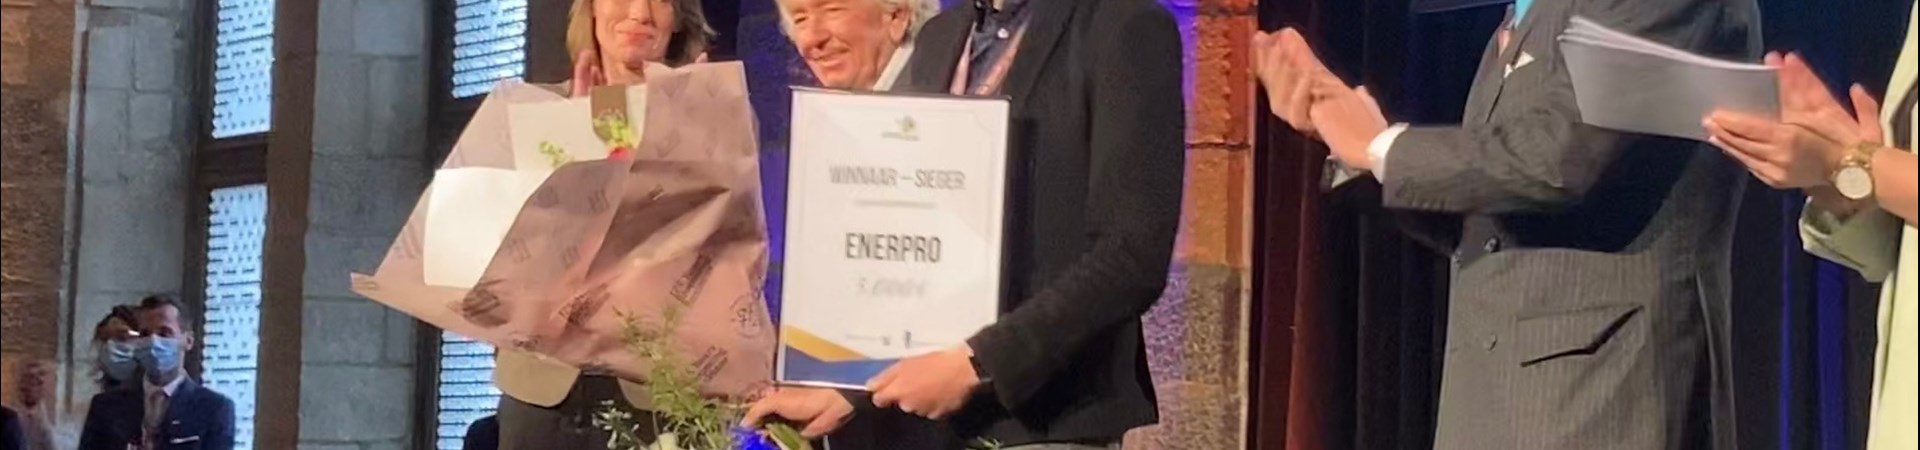 Grenslandprijs Enerpro